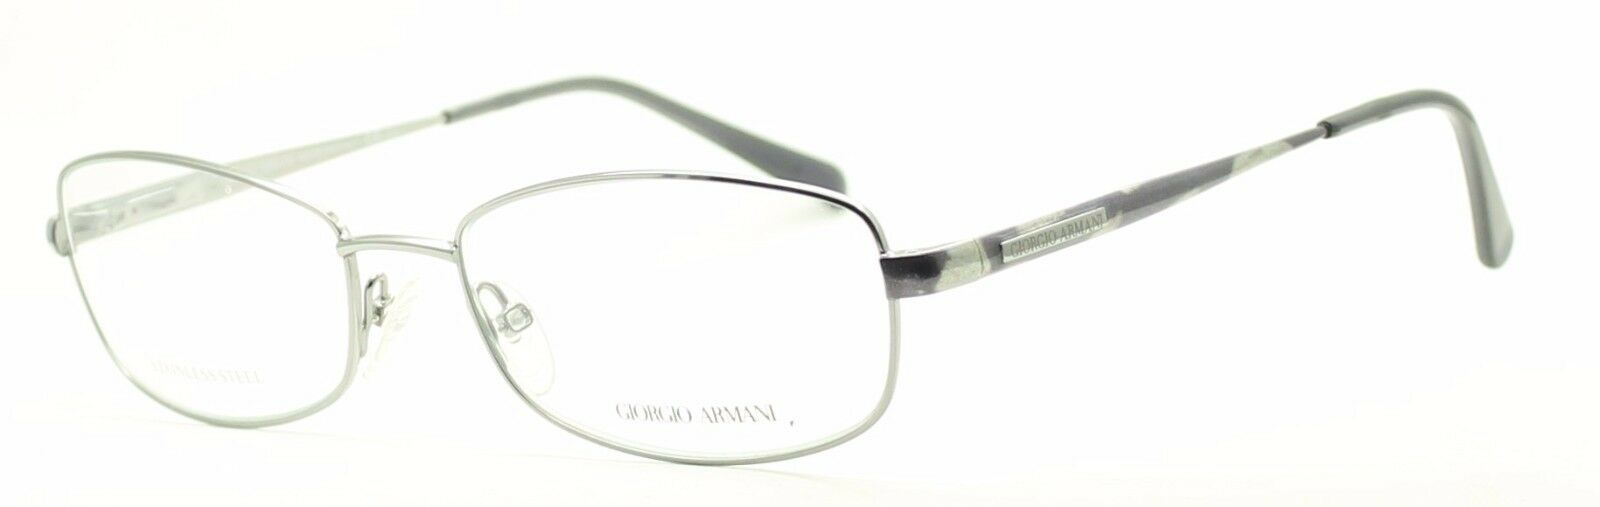 GIORGIO ARMANI GA 112 713 47mm Eyewear FRAMES Eyeglasses RX Optical Glasses  New - GGV Eyewear